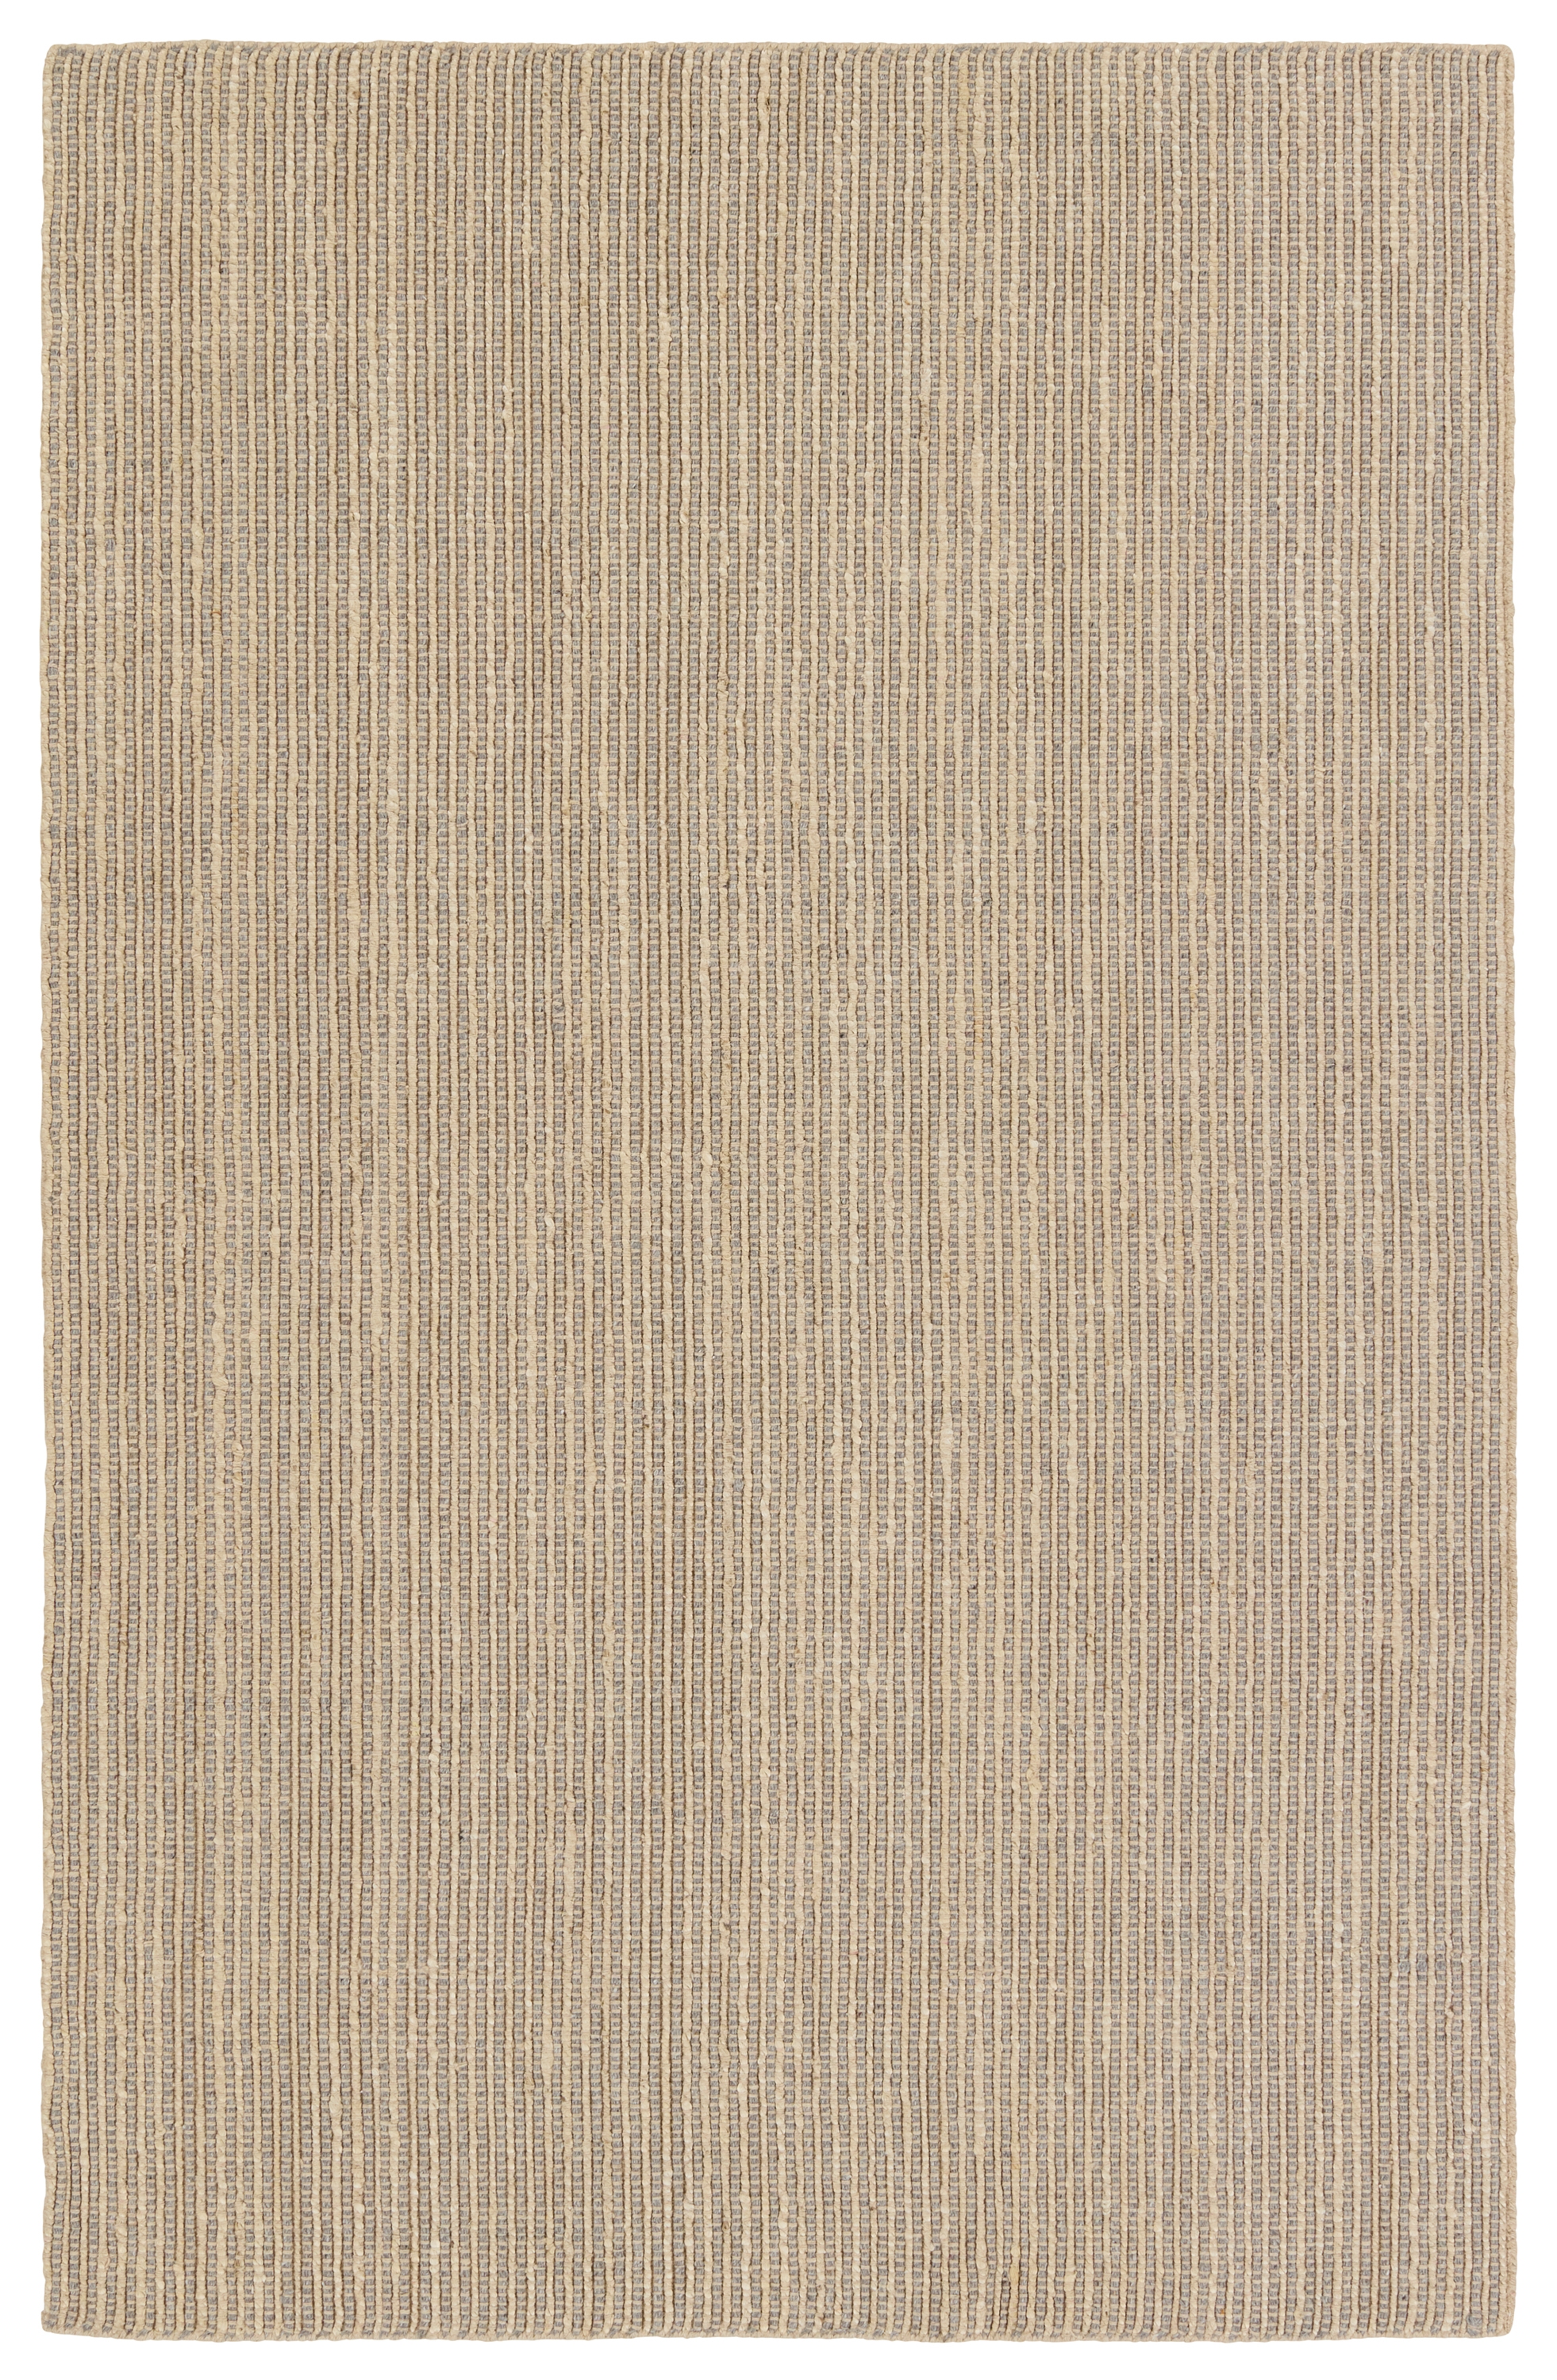 Latona Handmade Striped Gray/ Tan Runner Rug (3'X8') - Image 0